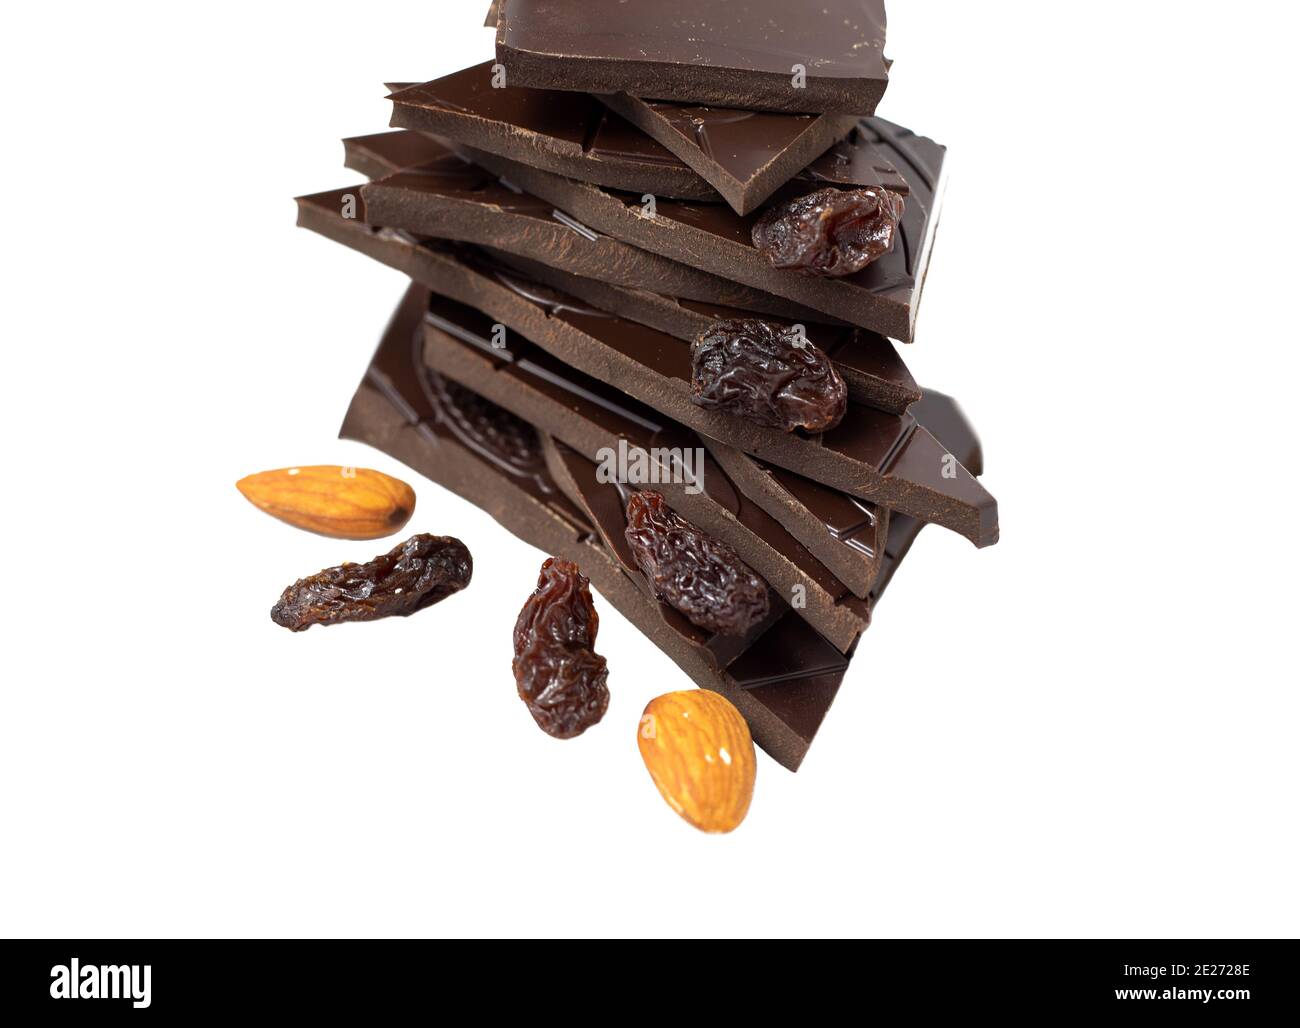 Pezzi da closeup di cioccolato fondente, mandorle e uvetta su sfondo bianco Foto Stock